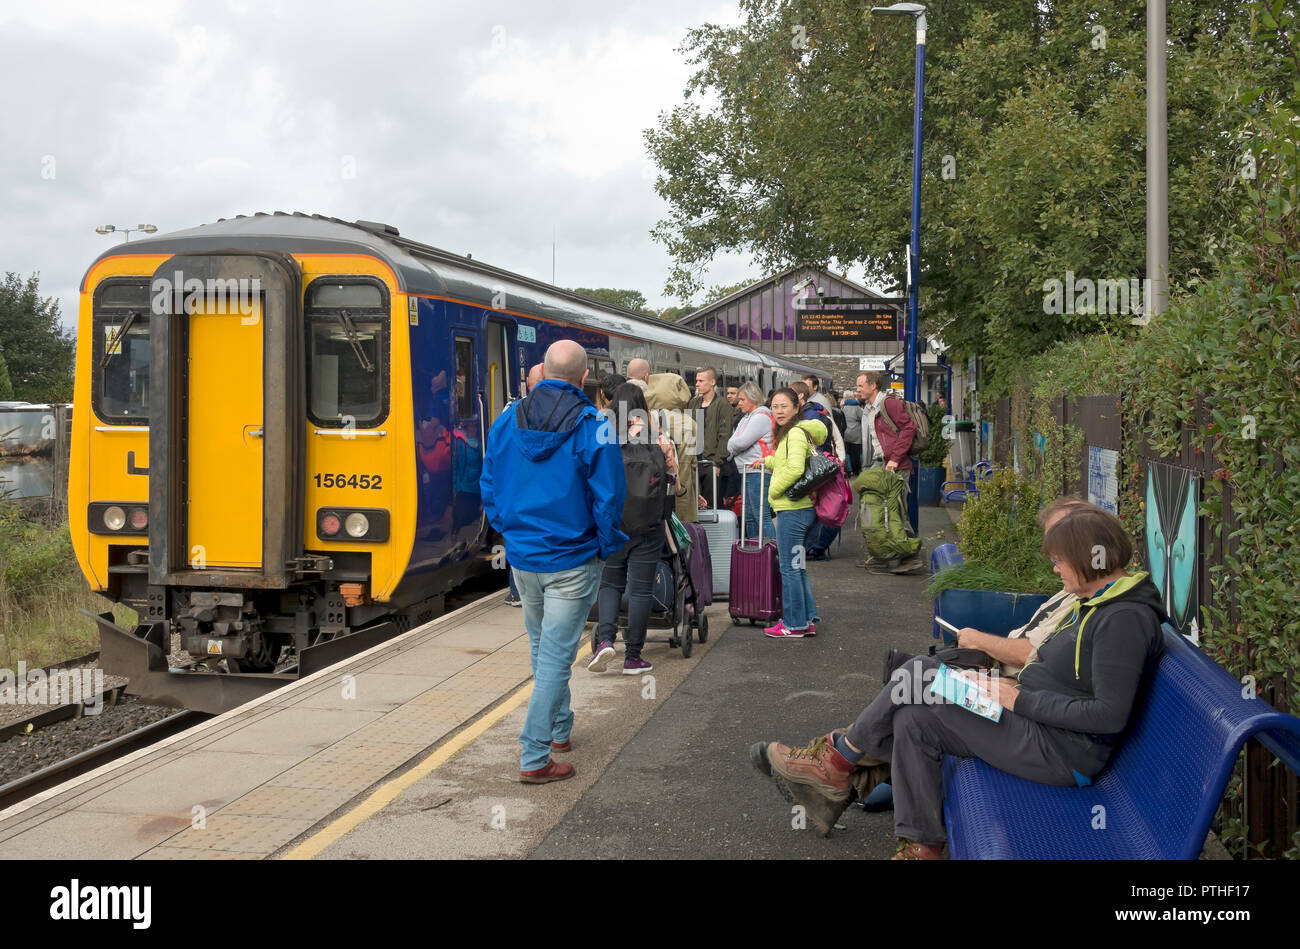 Passagiere Einsteigen in einen Nordzug mit viel befahrenem Bahnsteig Windermere Railway Station Cumbria England Großbritannien Großbritannien Großbritannien Großbritannien Großbritannien Großbritannien Großbritannien Großbritannien Großbritannien Großbritannien Großbritannien Großbritannien Stockfoto